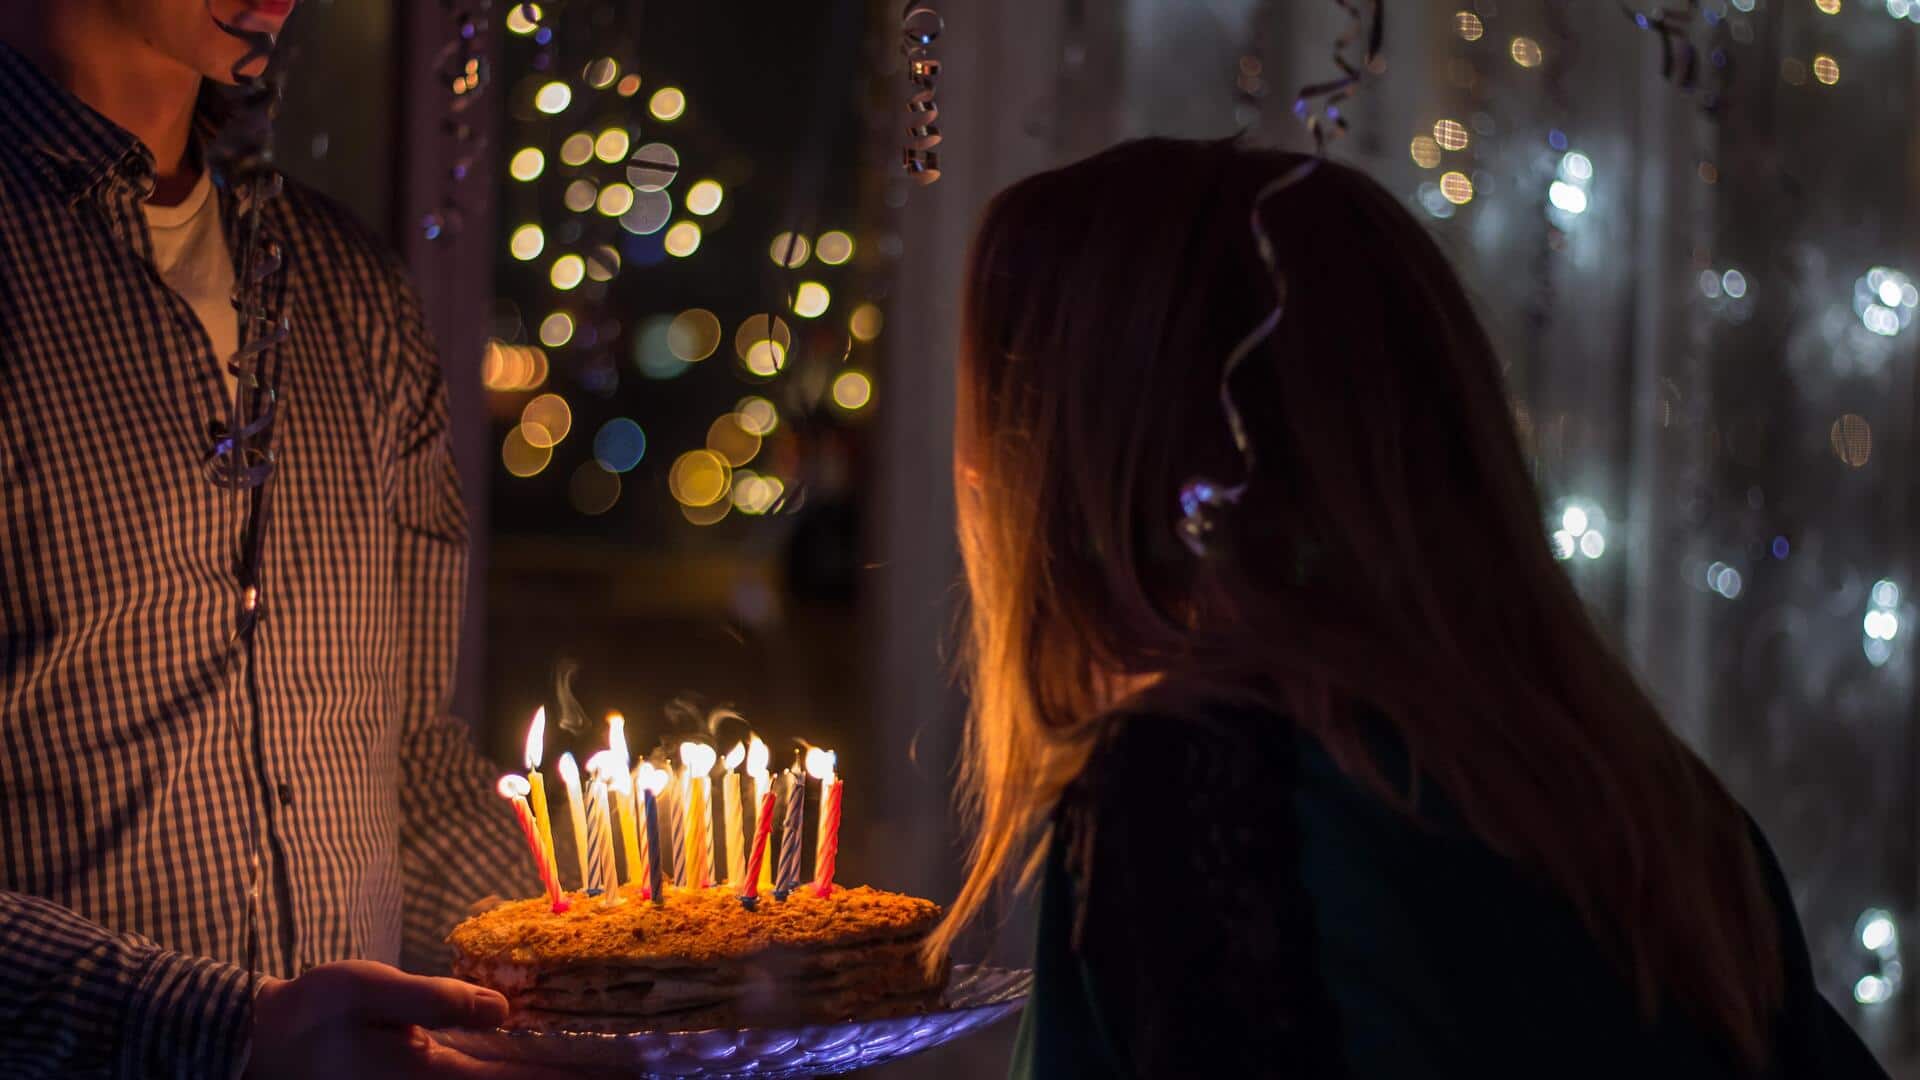 बिहार: गर्लफ्रेंड का जन्मदिन मनाने रात में केक लेकर पहुंचा युवक, परिजनों ने पहुंचा दिया अस्पताल